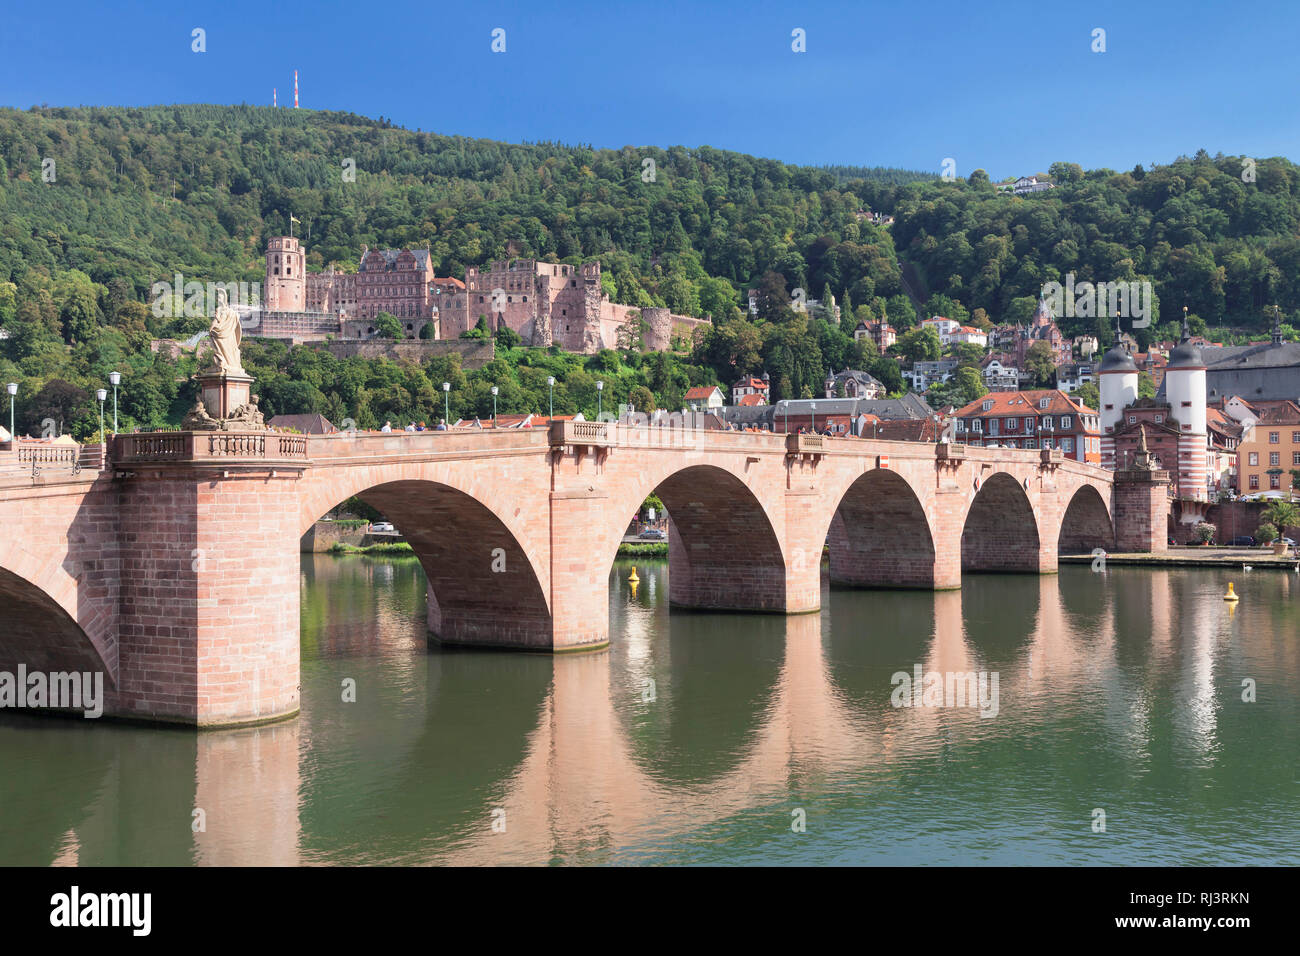 Blick über den Neckar auf die Altstadt mit Karl-Theodor-Brücke, Brückentor und Schloss, Heidelberg, Bade-Wurtemberg, Allemagne Banque D'Images